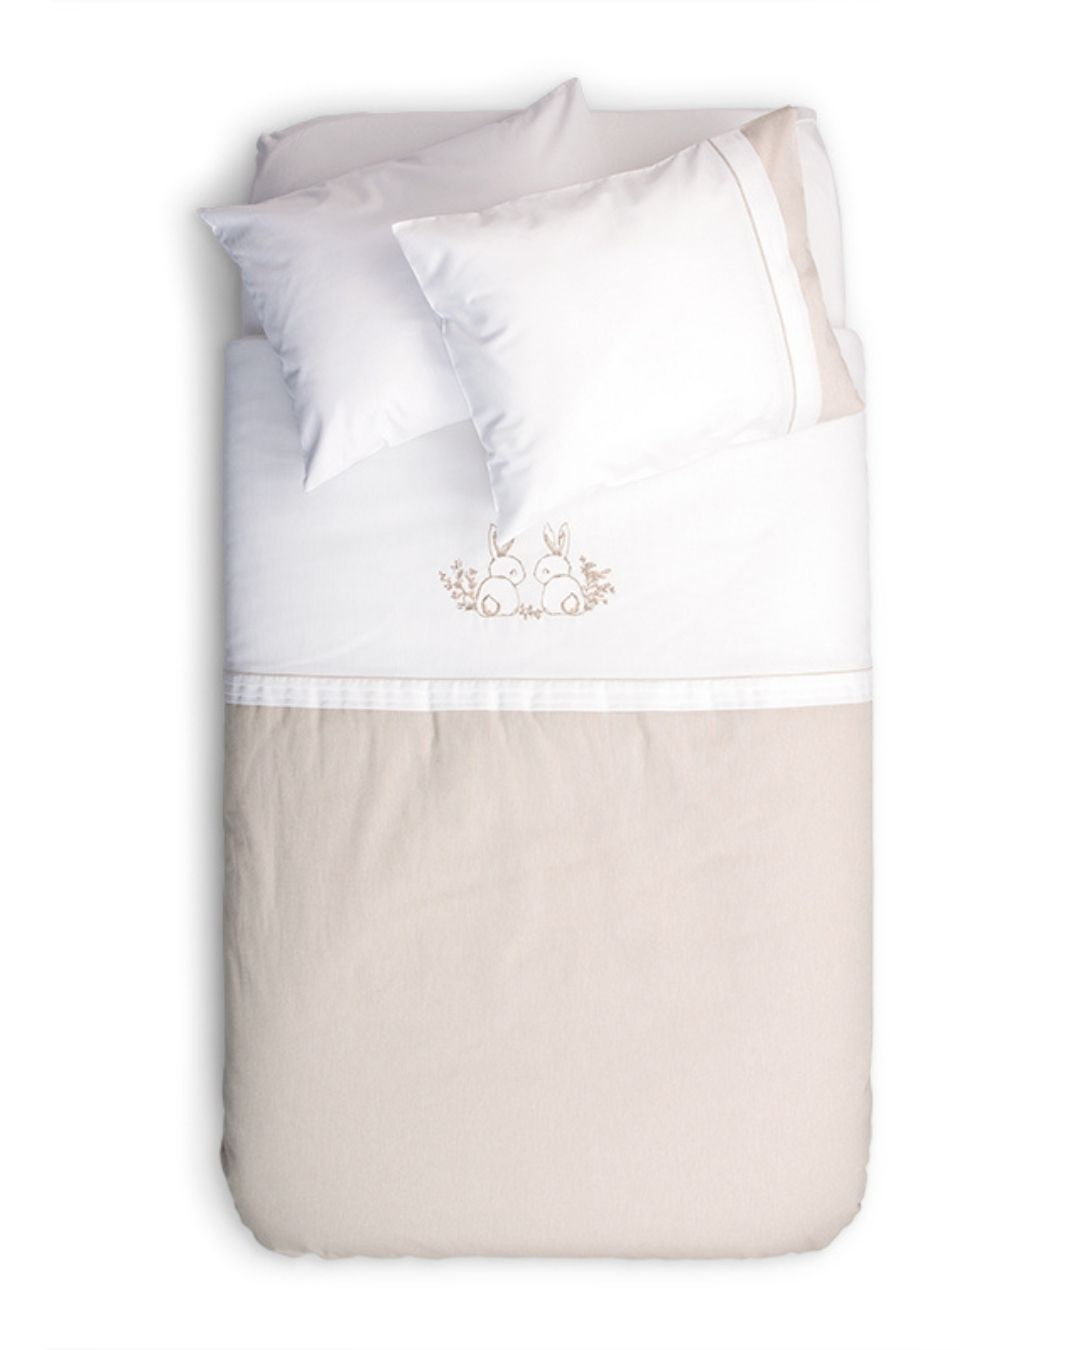 posteljina za bebe set od cetiri dela u kombinaciji bez i bele boje sa vezenim motivom zeca na beloj pozadini